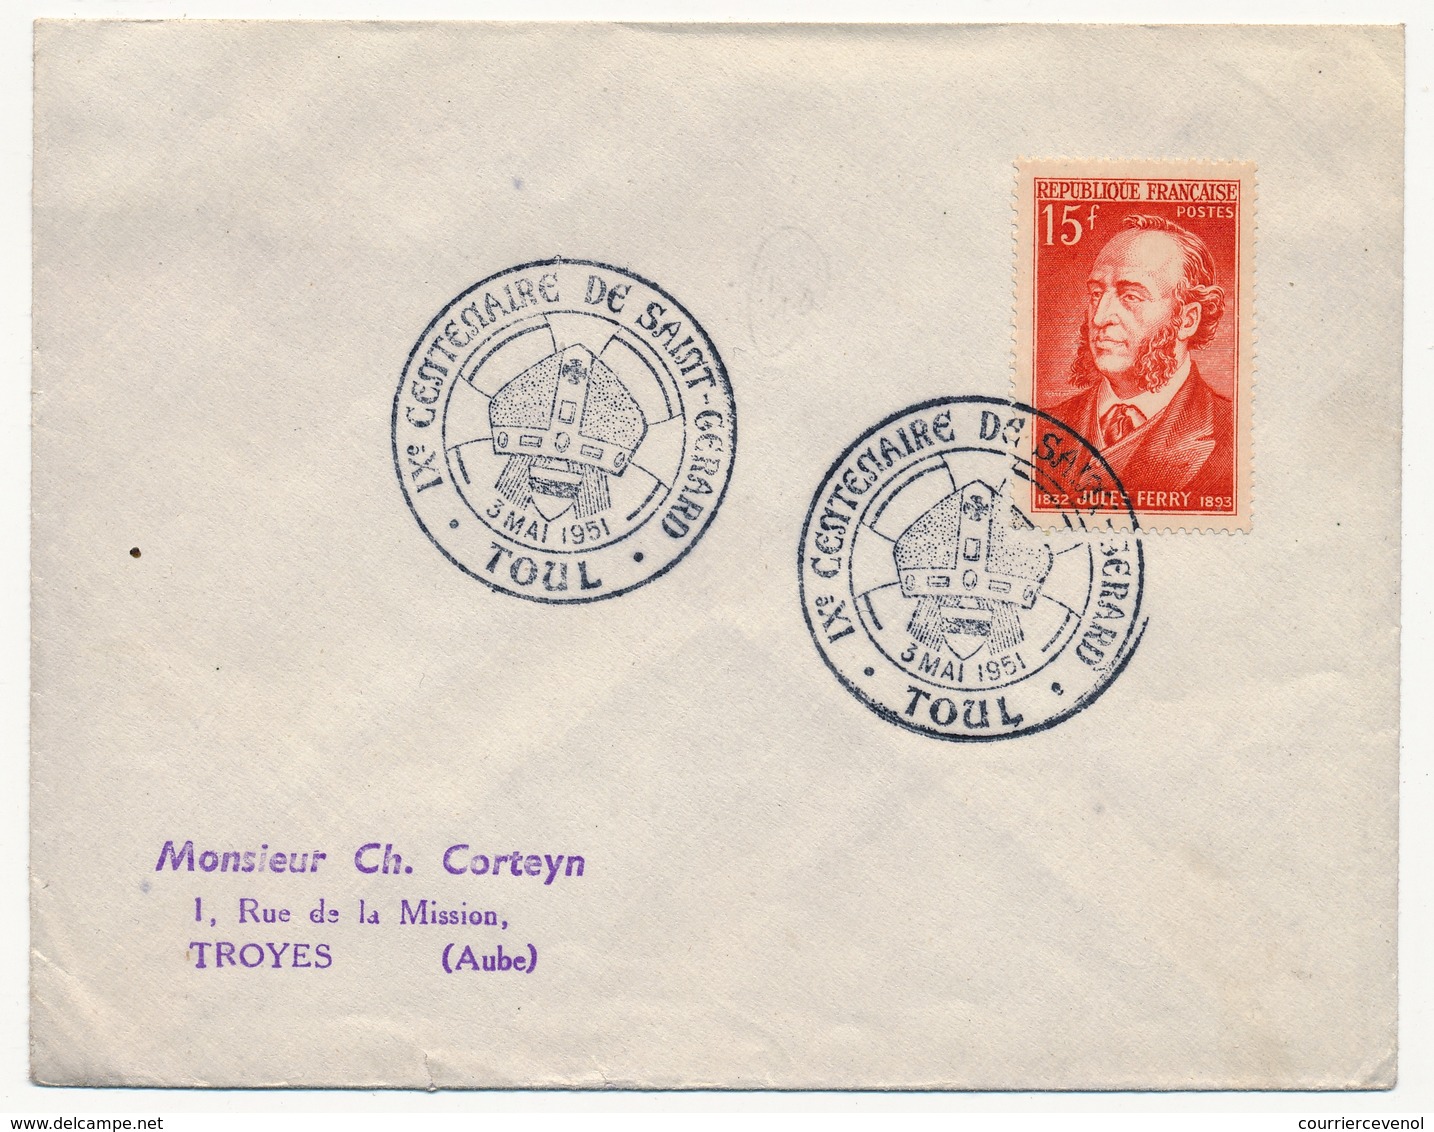 FRANCE - Env Cachet Temporaire "IXe CENTENAIRE DE SAINT-GERARD" - 3/5/1951 - TOUL - Commemorative Postmarks